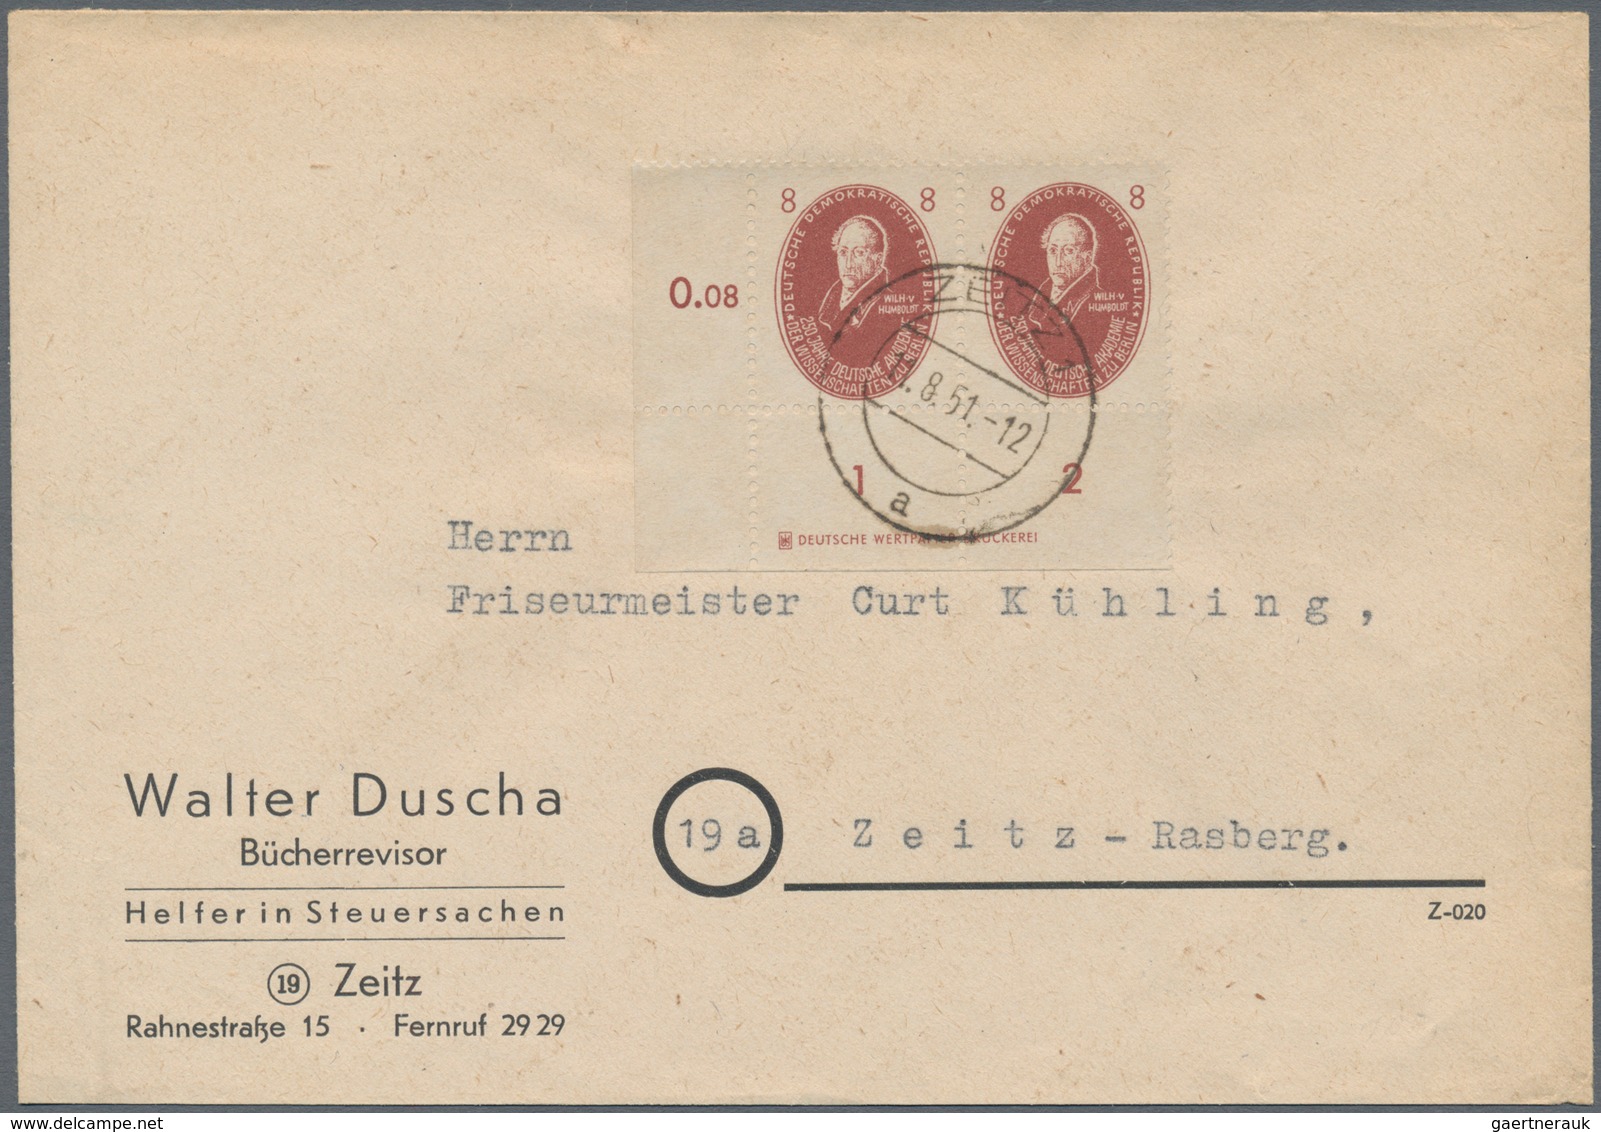 DDR: 1948-1990, hochwertiger Bestand mit vielen hundert Briefen, Ganzsachen und Belegen, dabei tolle